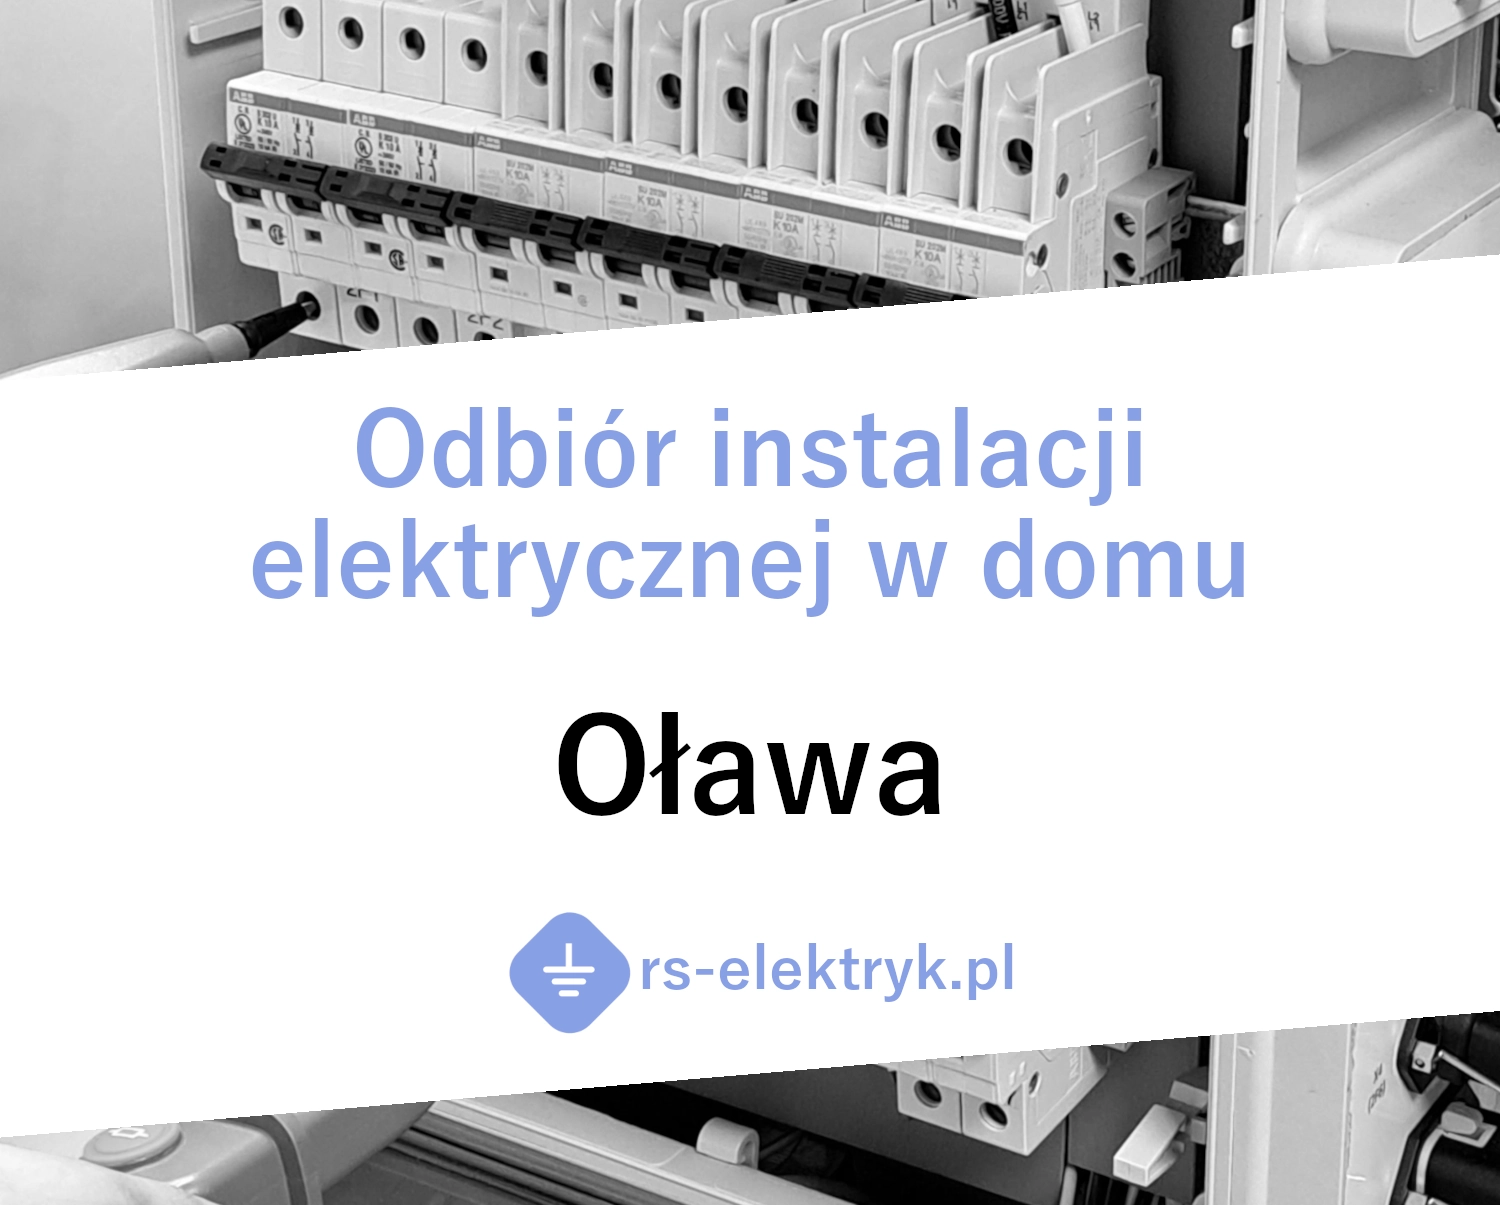 Odbiór instalacji elektrycznej w domu Oława